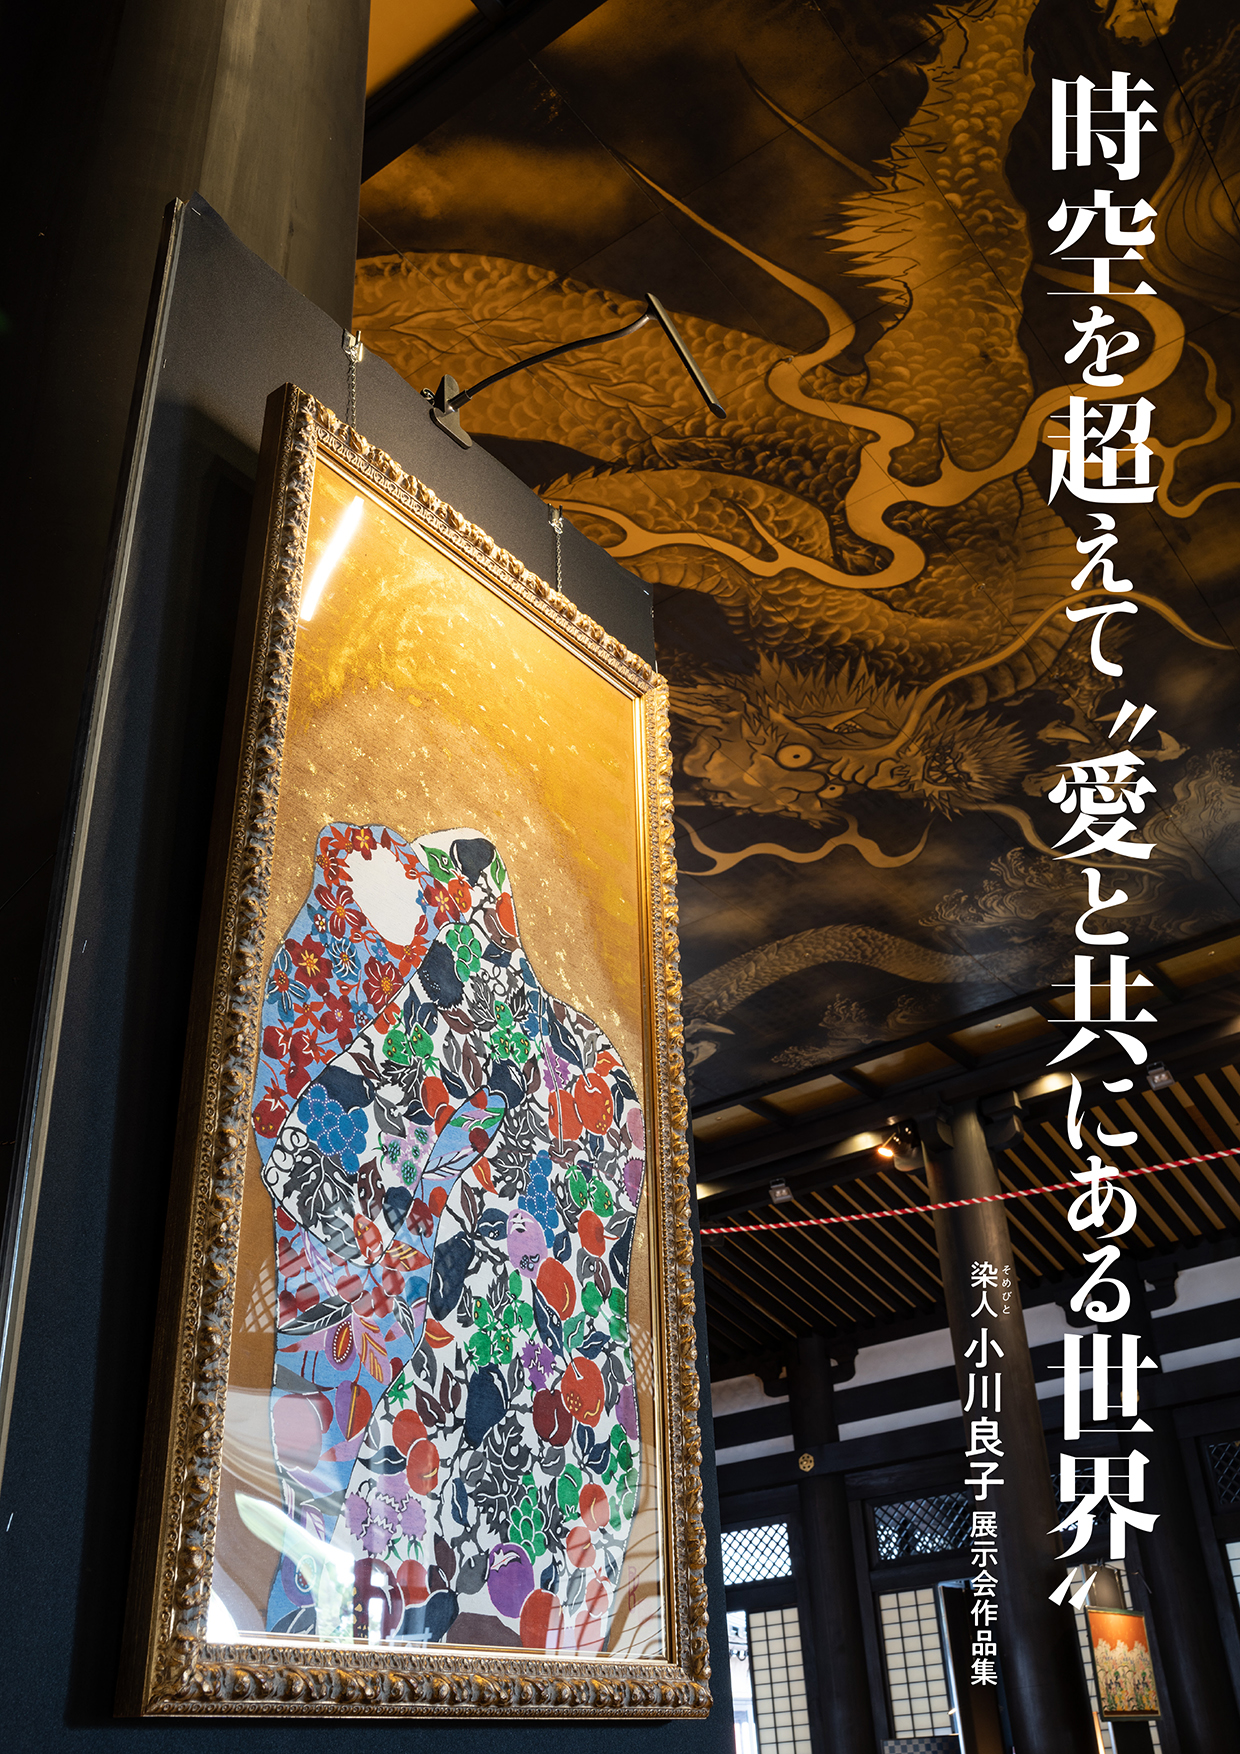 染人 小川良子 展示会作品集 時空を超えて“愛と共にある世界”画像